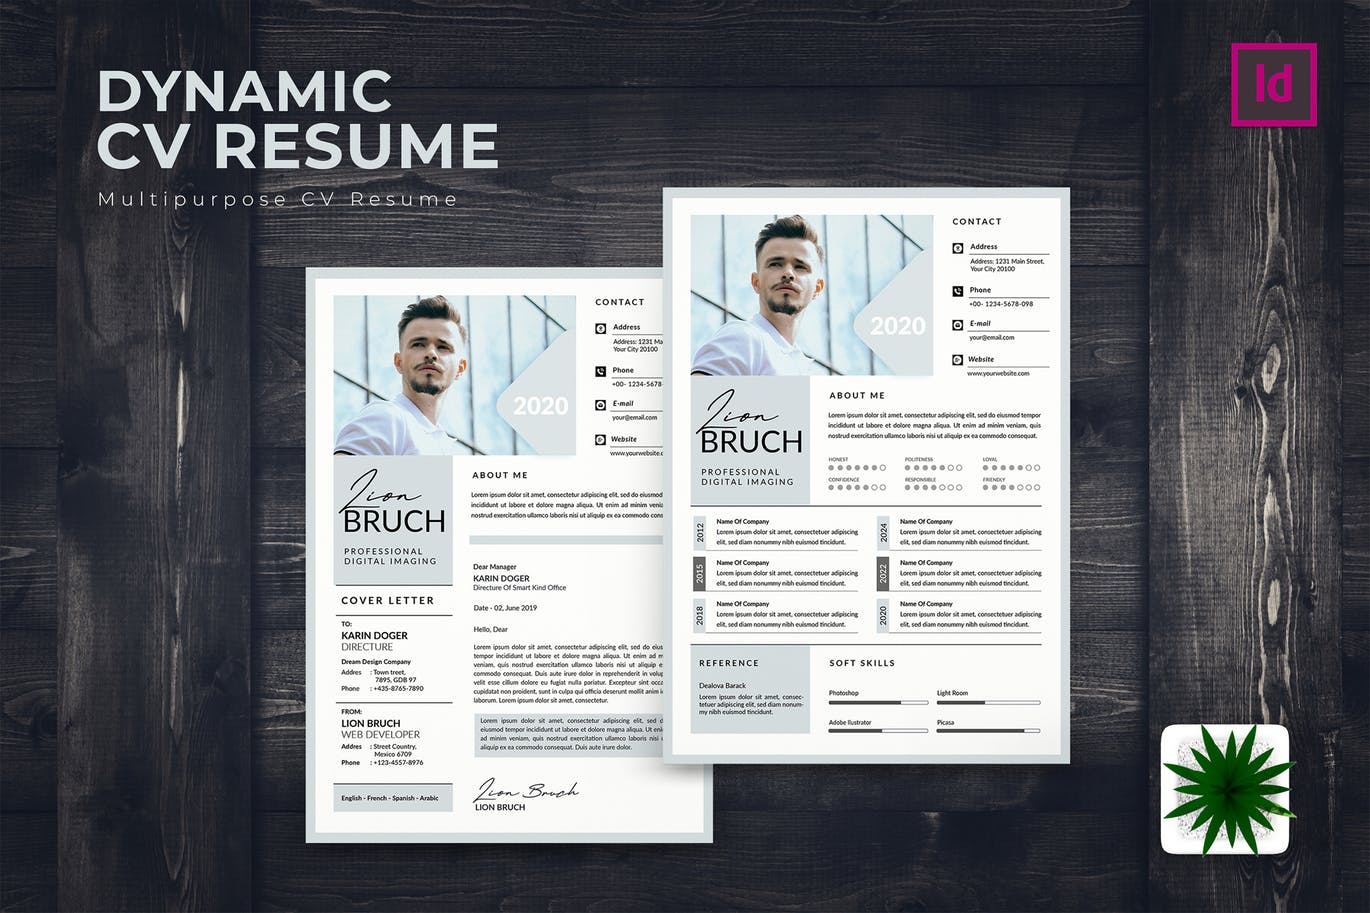 专业图形设计师电子素材库精选简历模板 Dynamic CV Resume插图